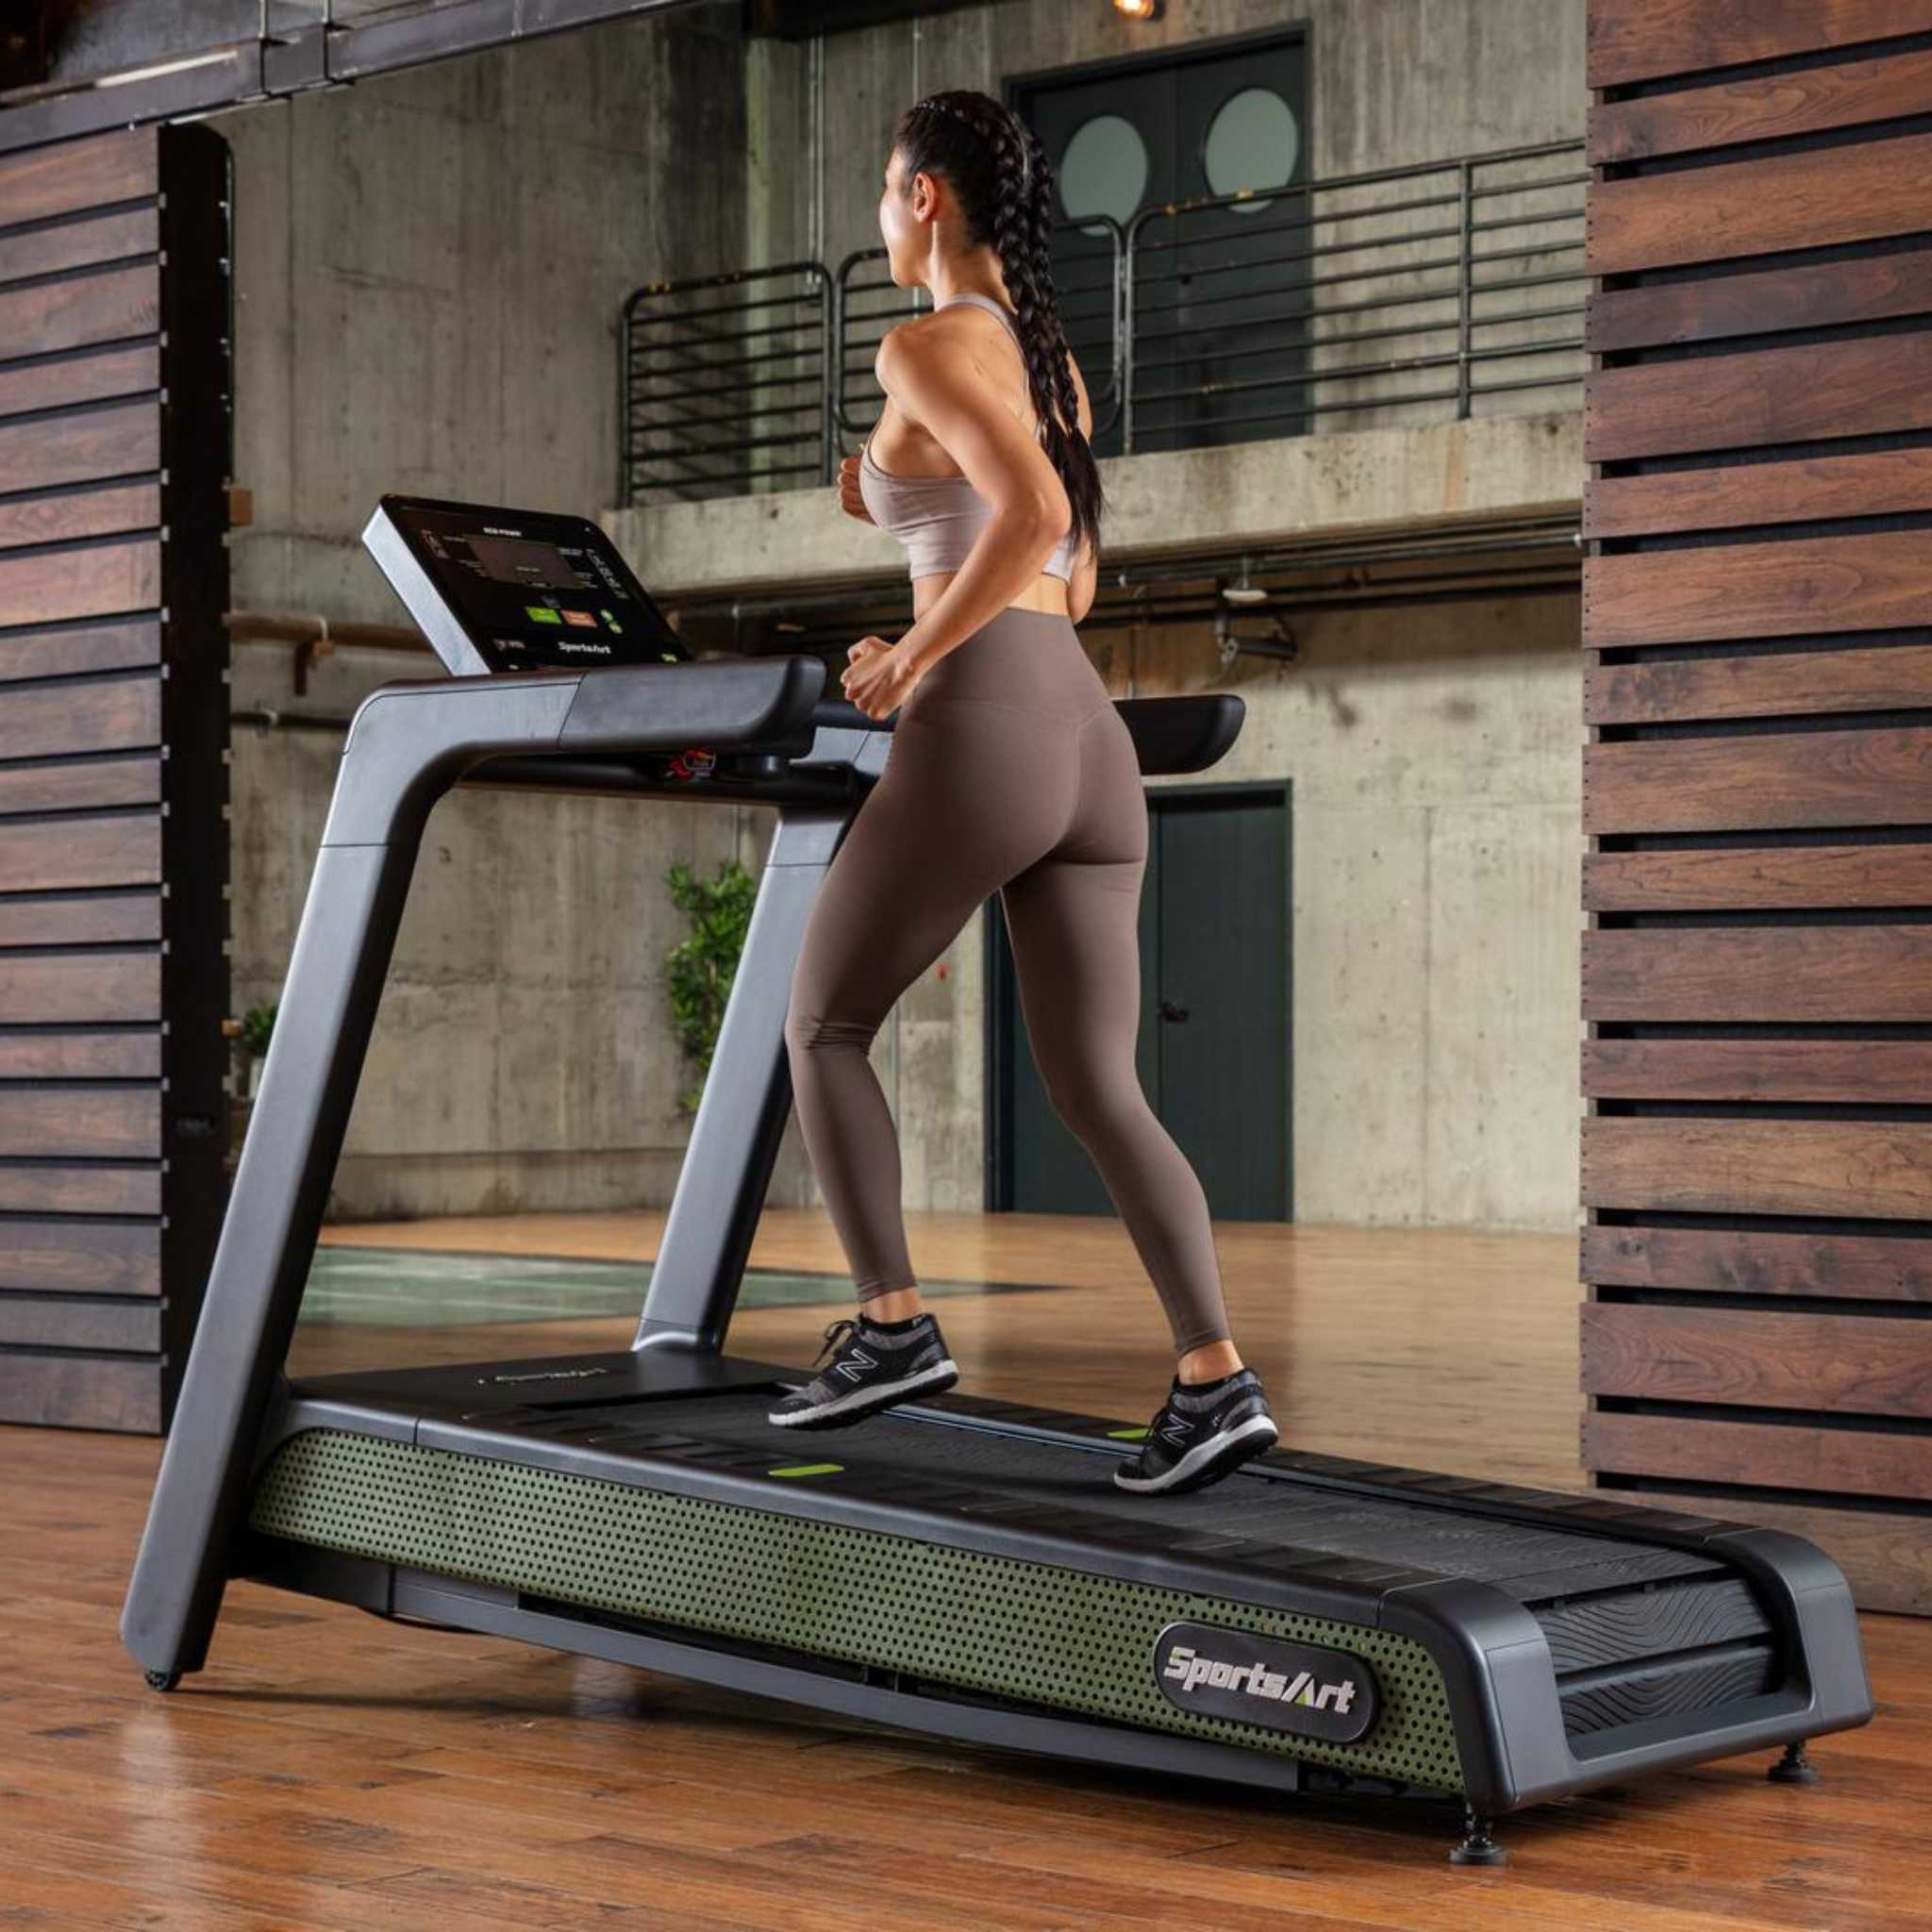 SportsArt G660 Treadmill Female Runner